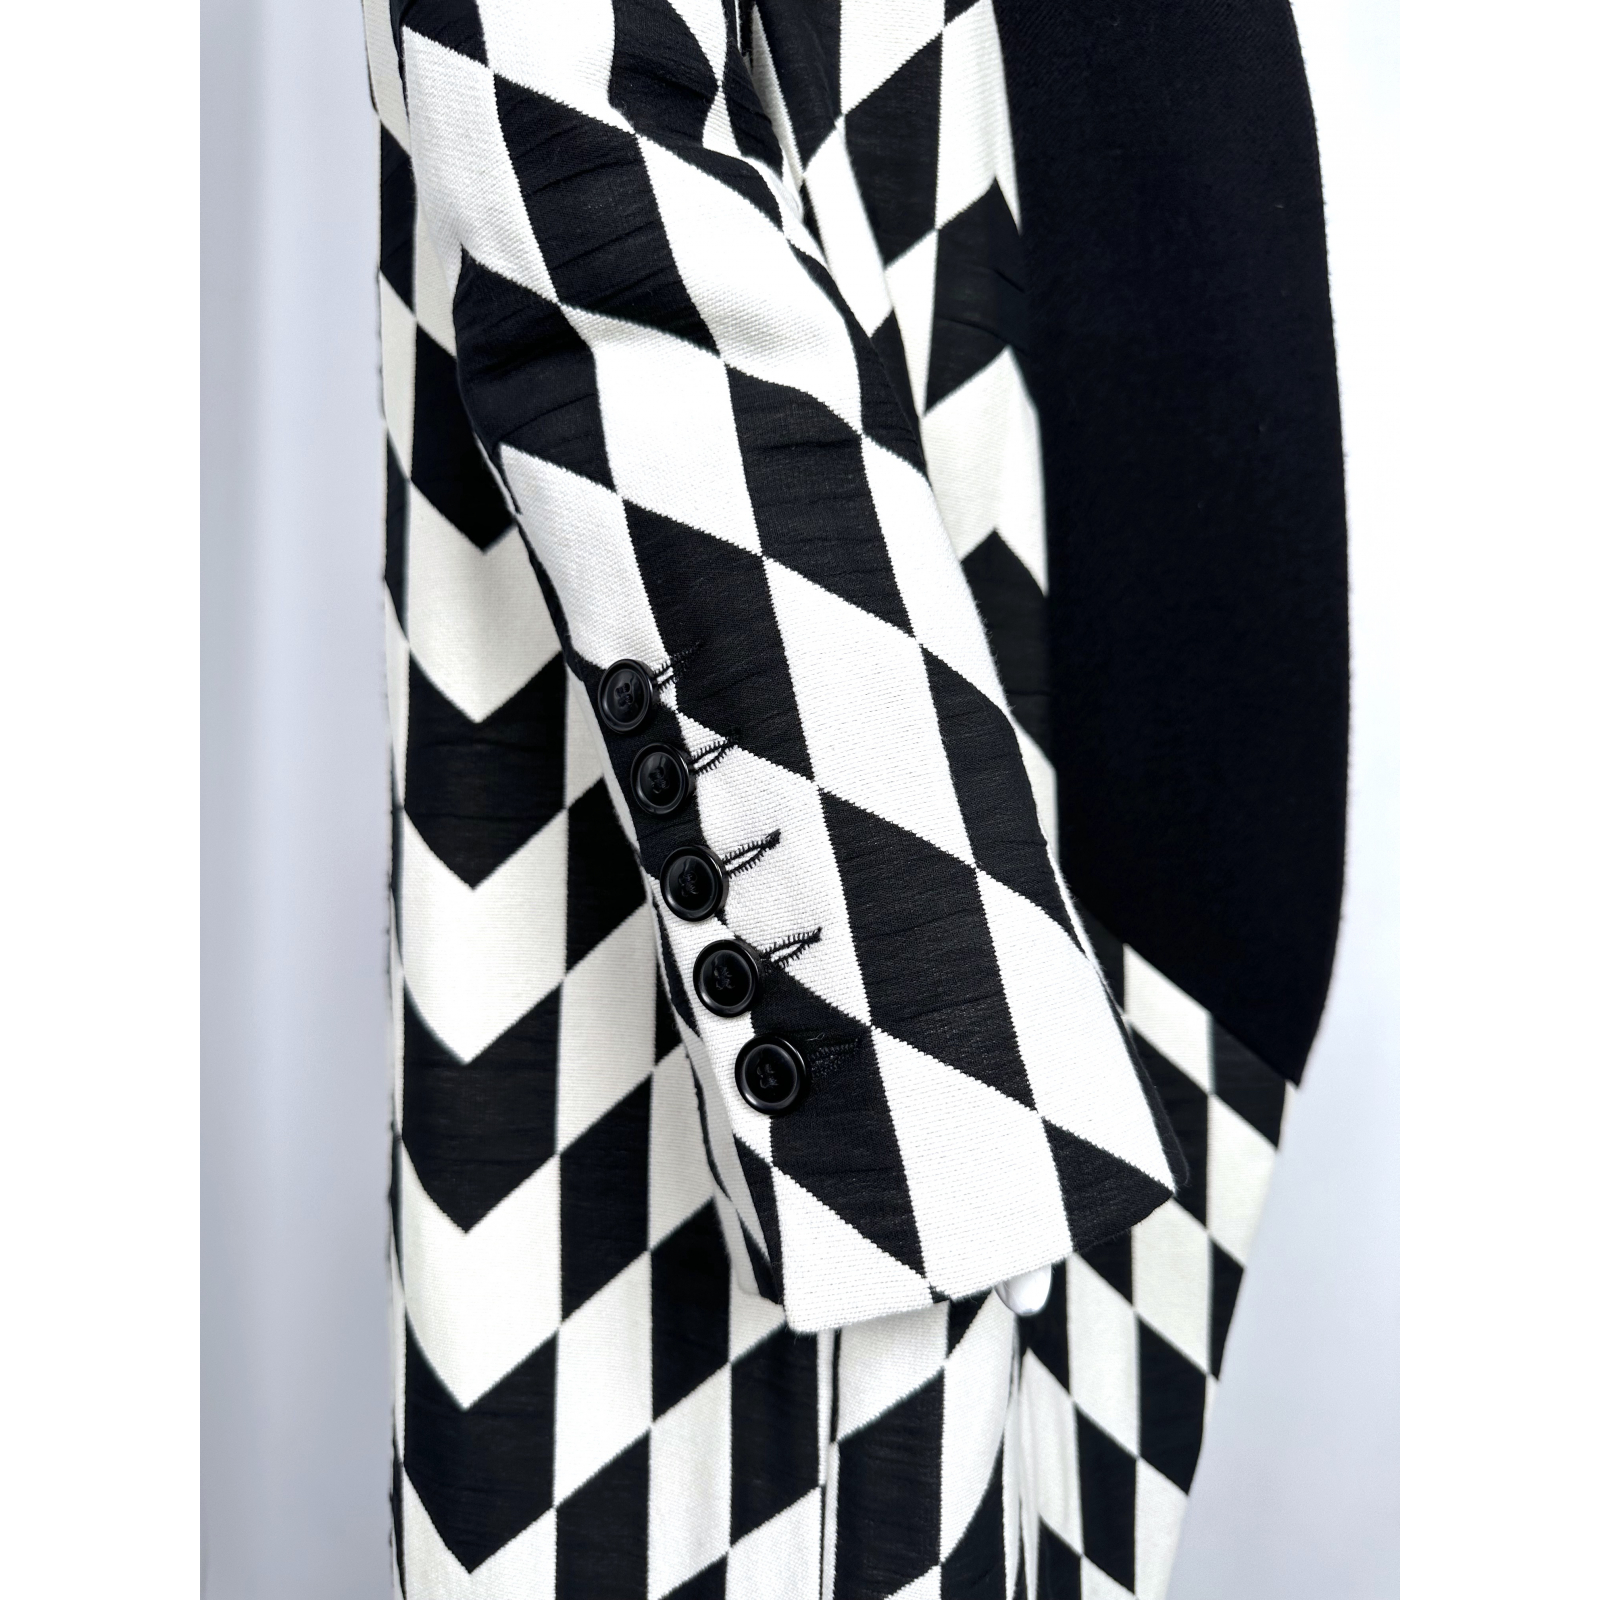 Bawełniany płaszcz Black&White Bazaar